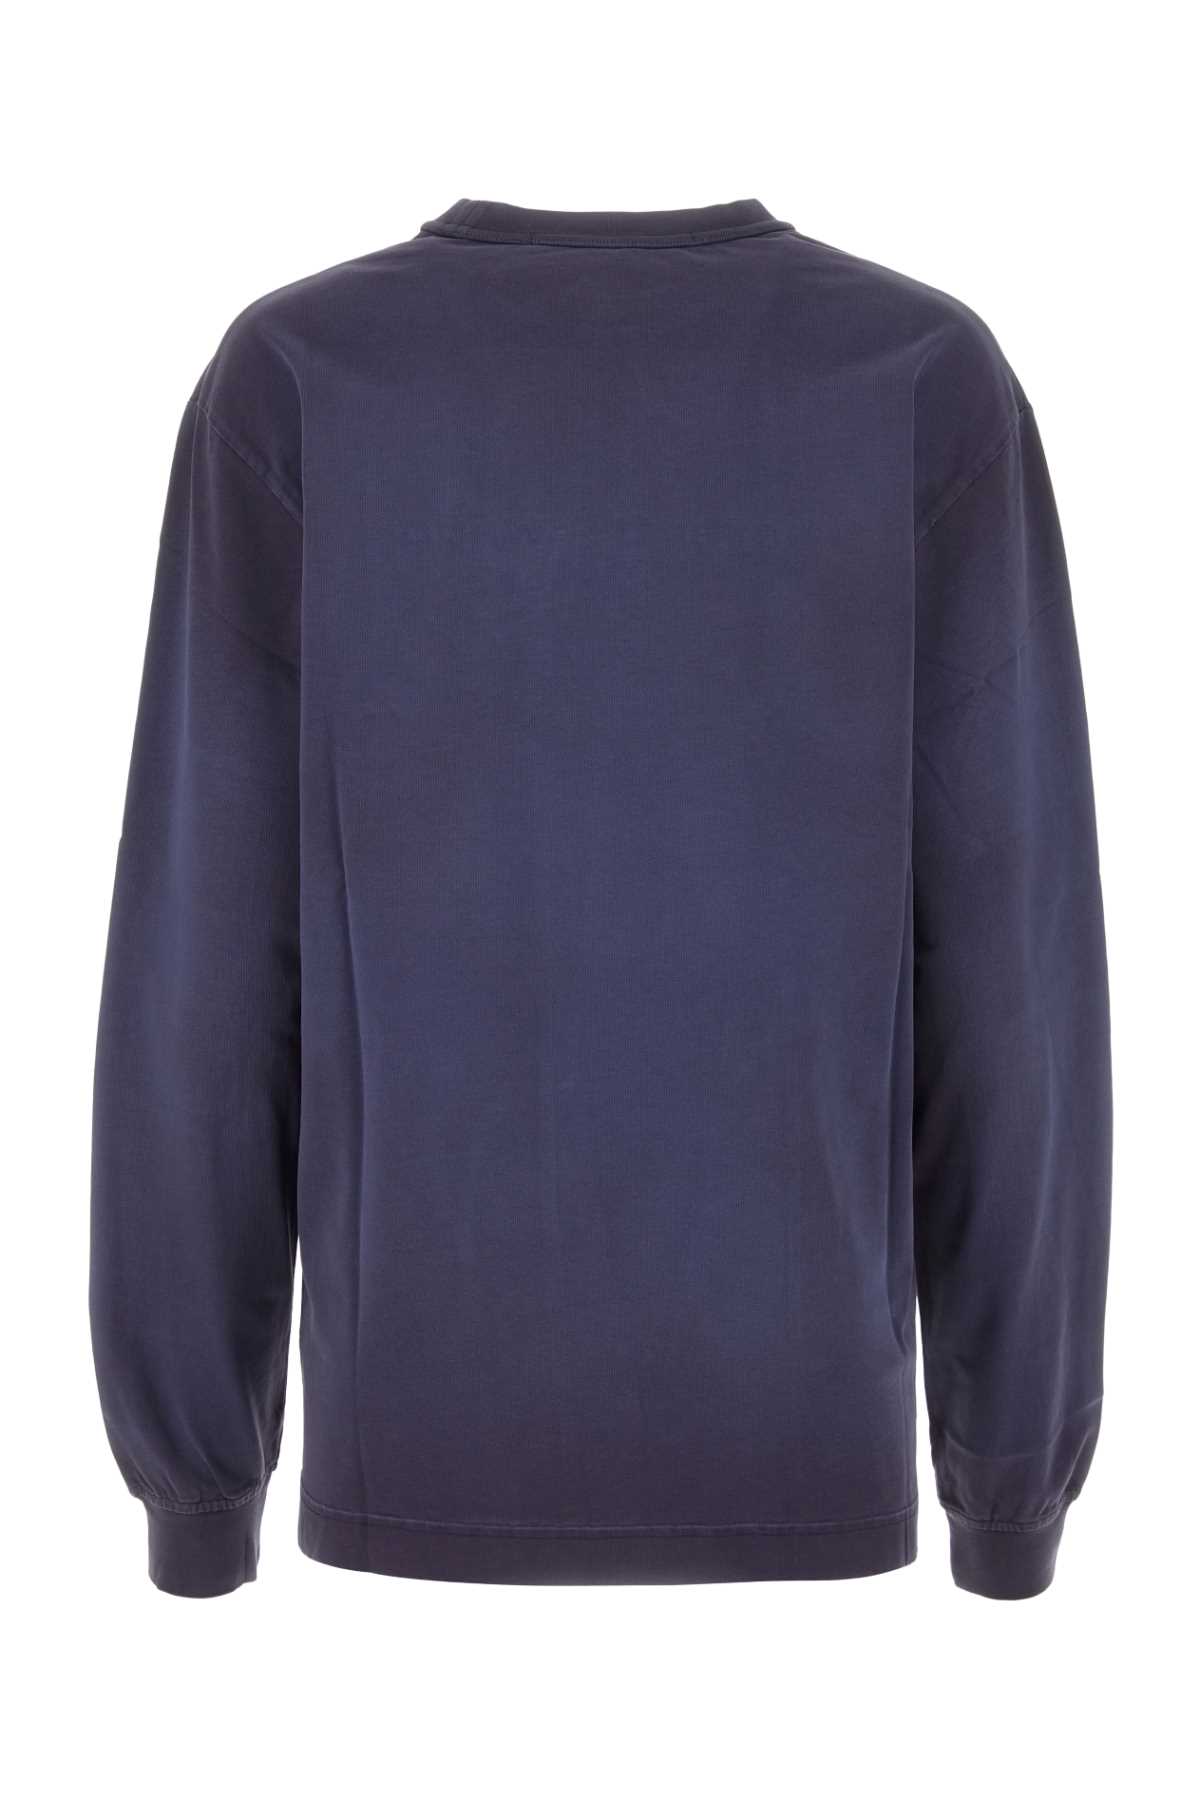 Alexander Wang Navy Blue Cotton Oversize T-shirt In Grapenavy